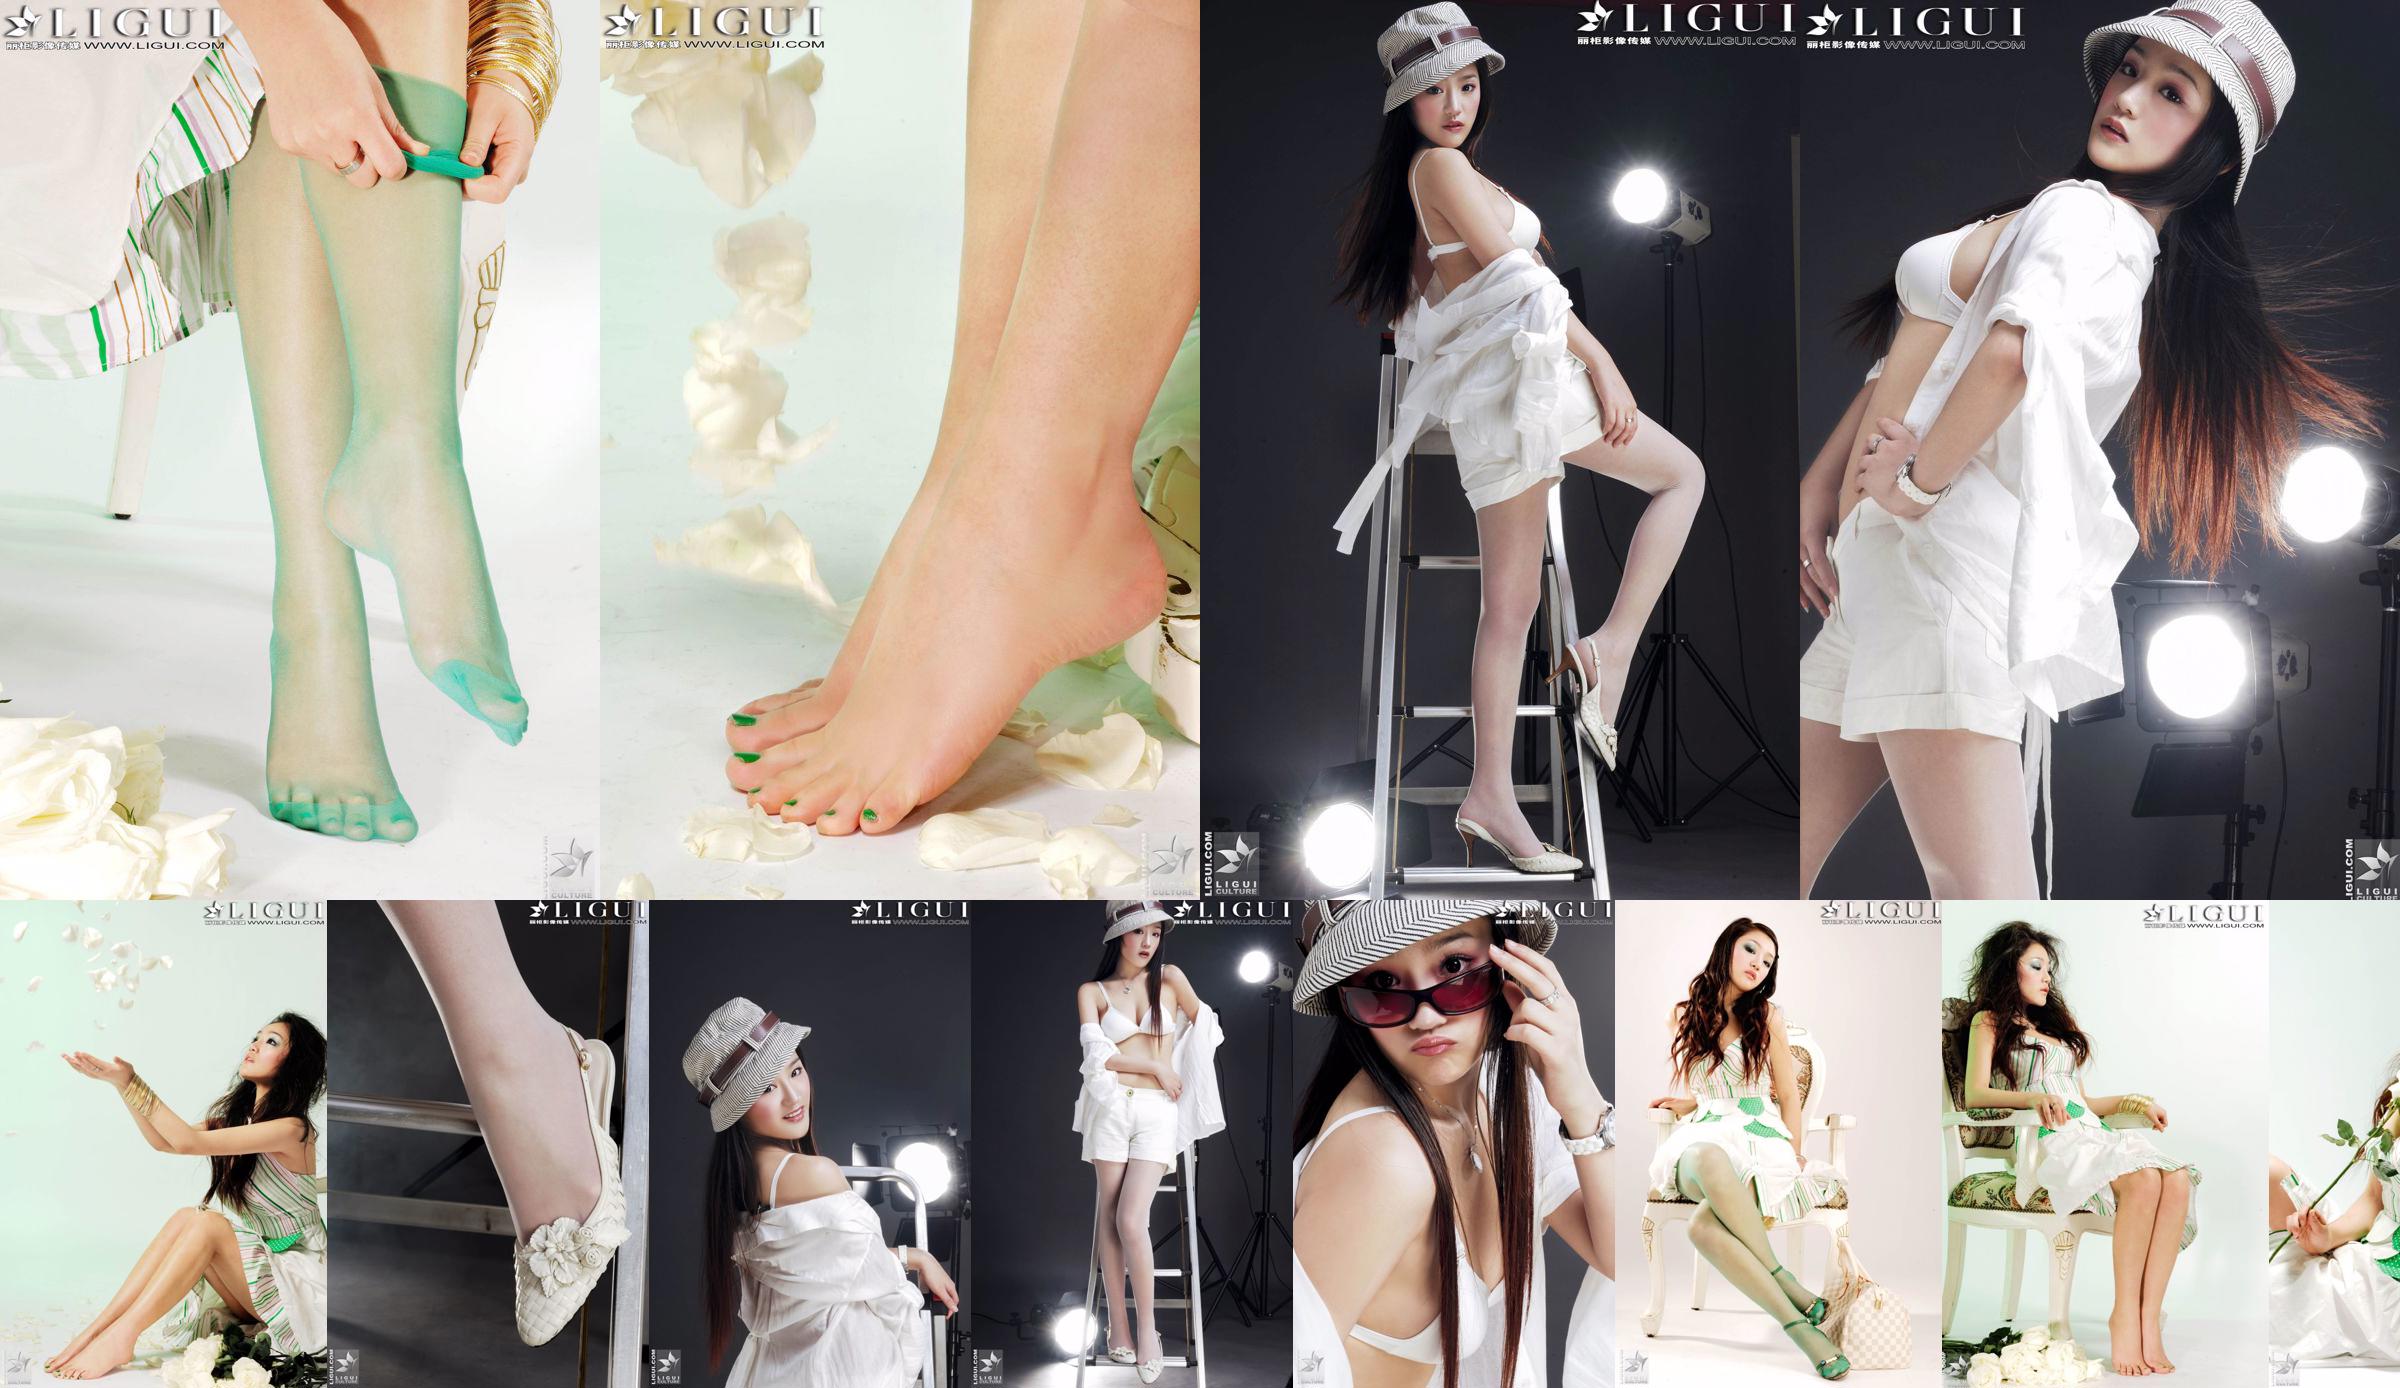 [丽柜贵 foot LiGui] นางแบบภาพถ่าย "Fashionable Foot" ของ Zhang Jingyan ขาสวยและเท้าไหม No.c33246 หน้า 1